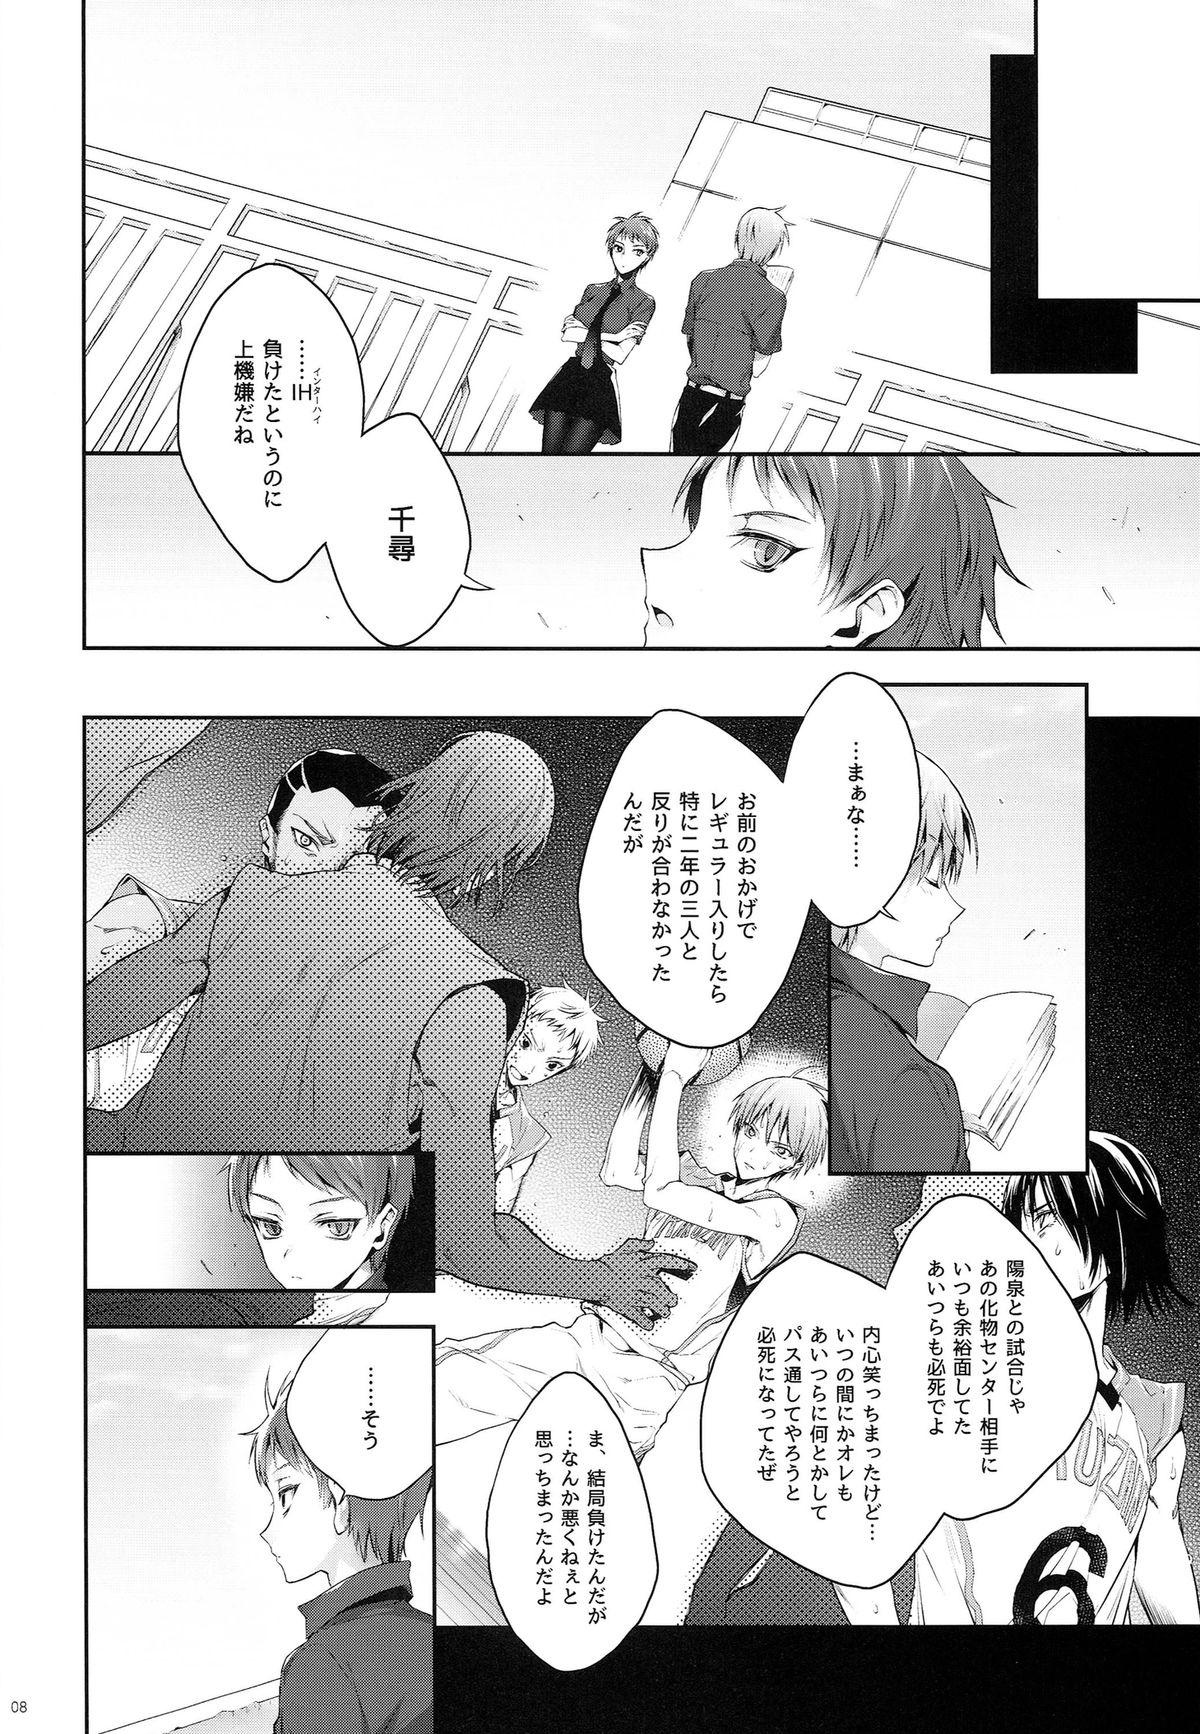 Mama Kakugo to Kimagure - Kuroko no basuke Trans - Page 8